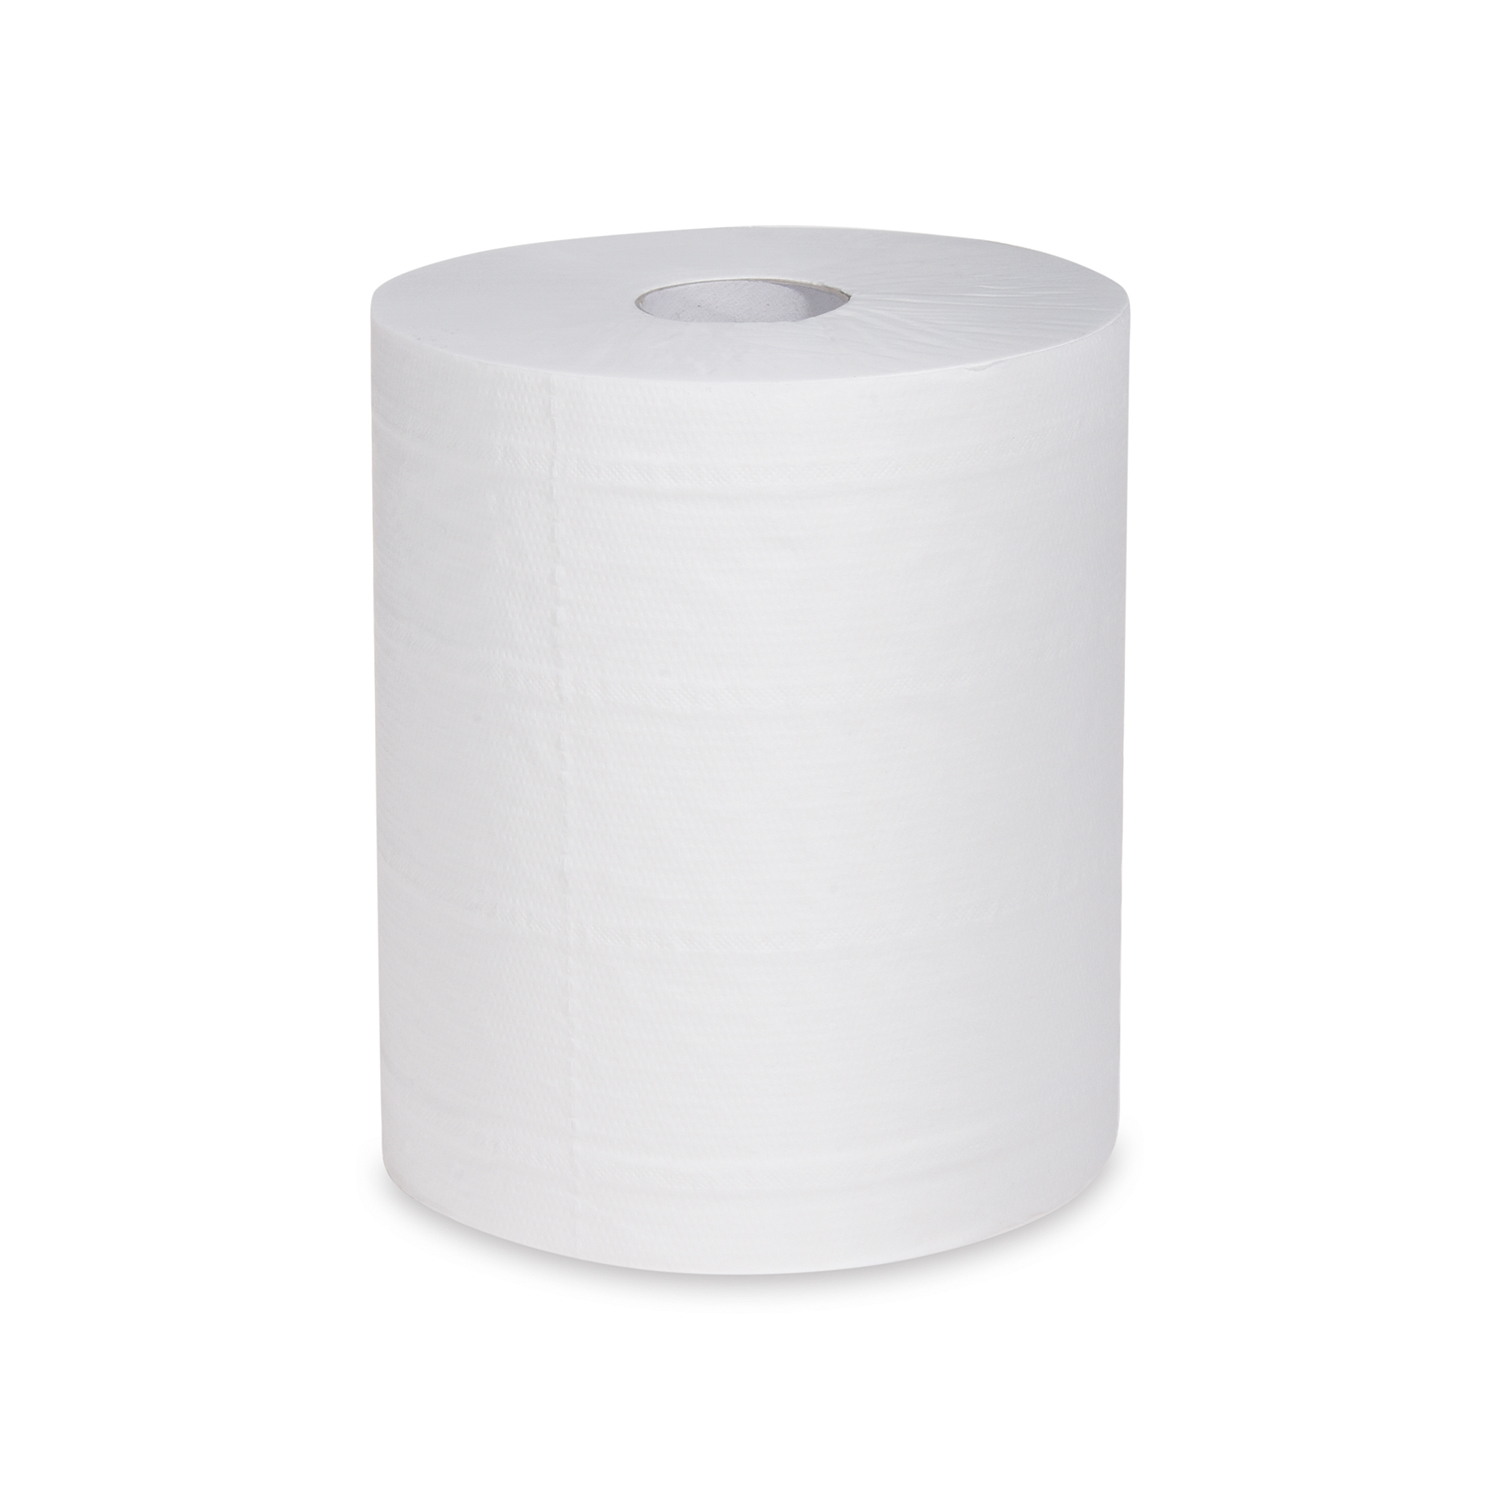 Papierrolle, Putztuch, 2-lagig, weiß, Ø 19cm, 22cmx160m, 6 Rollen/Packung